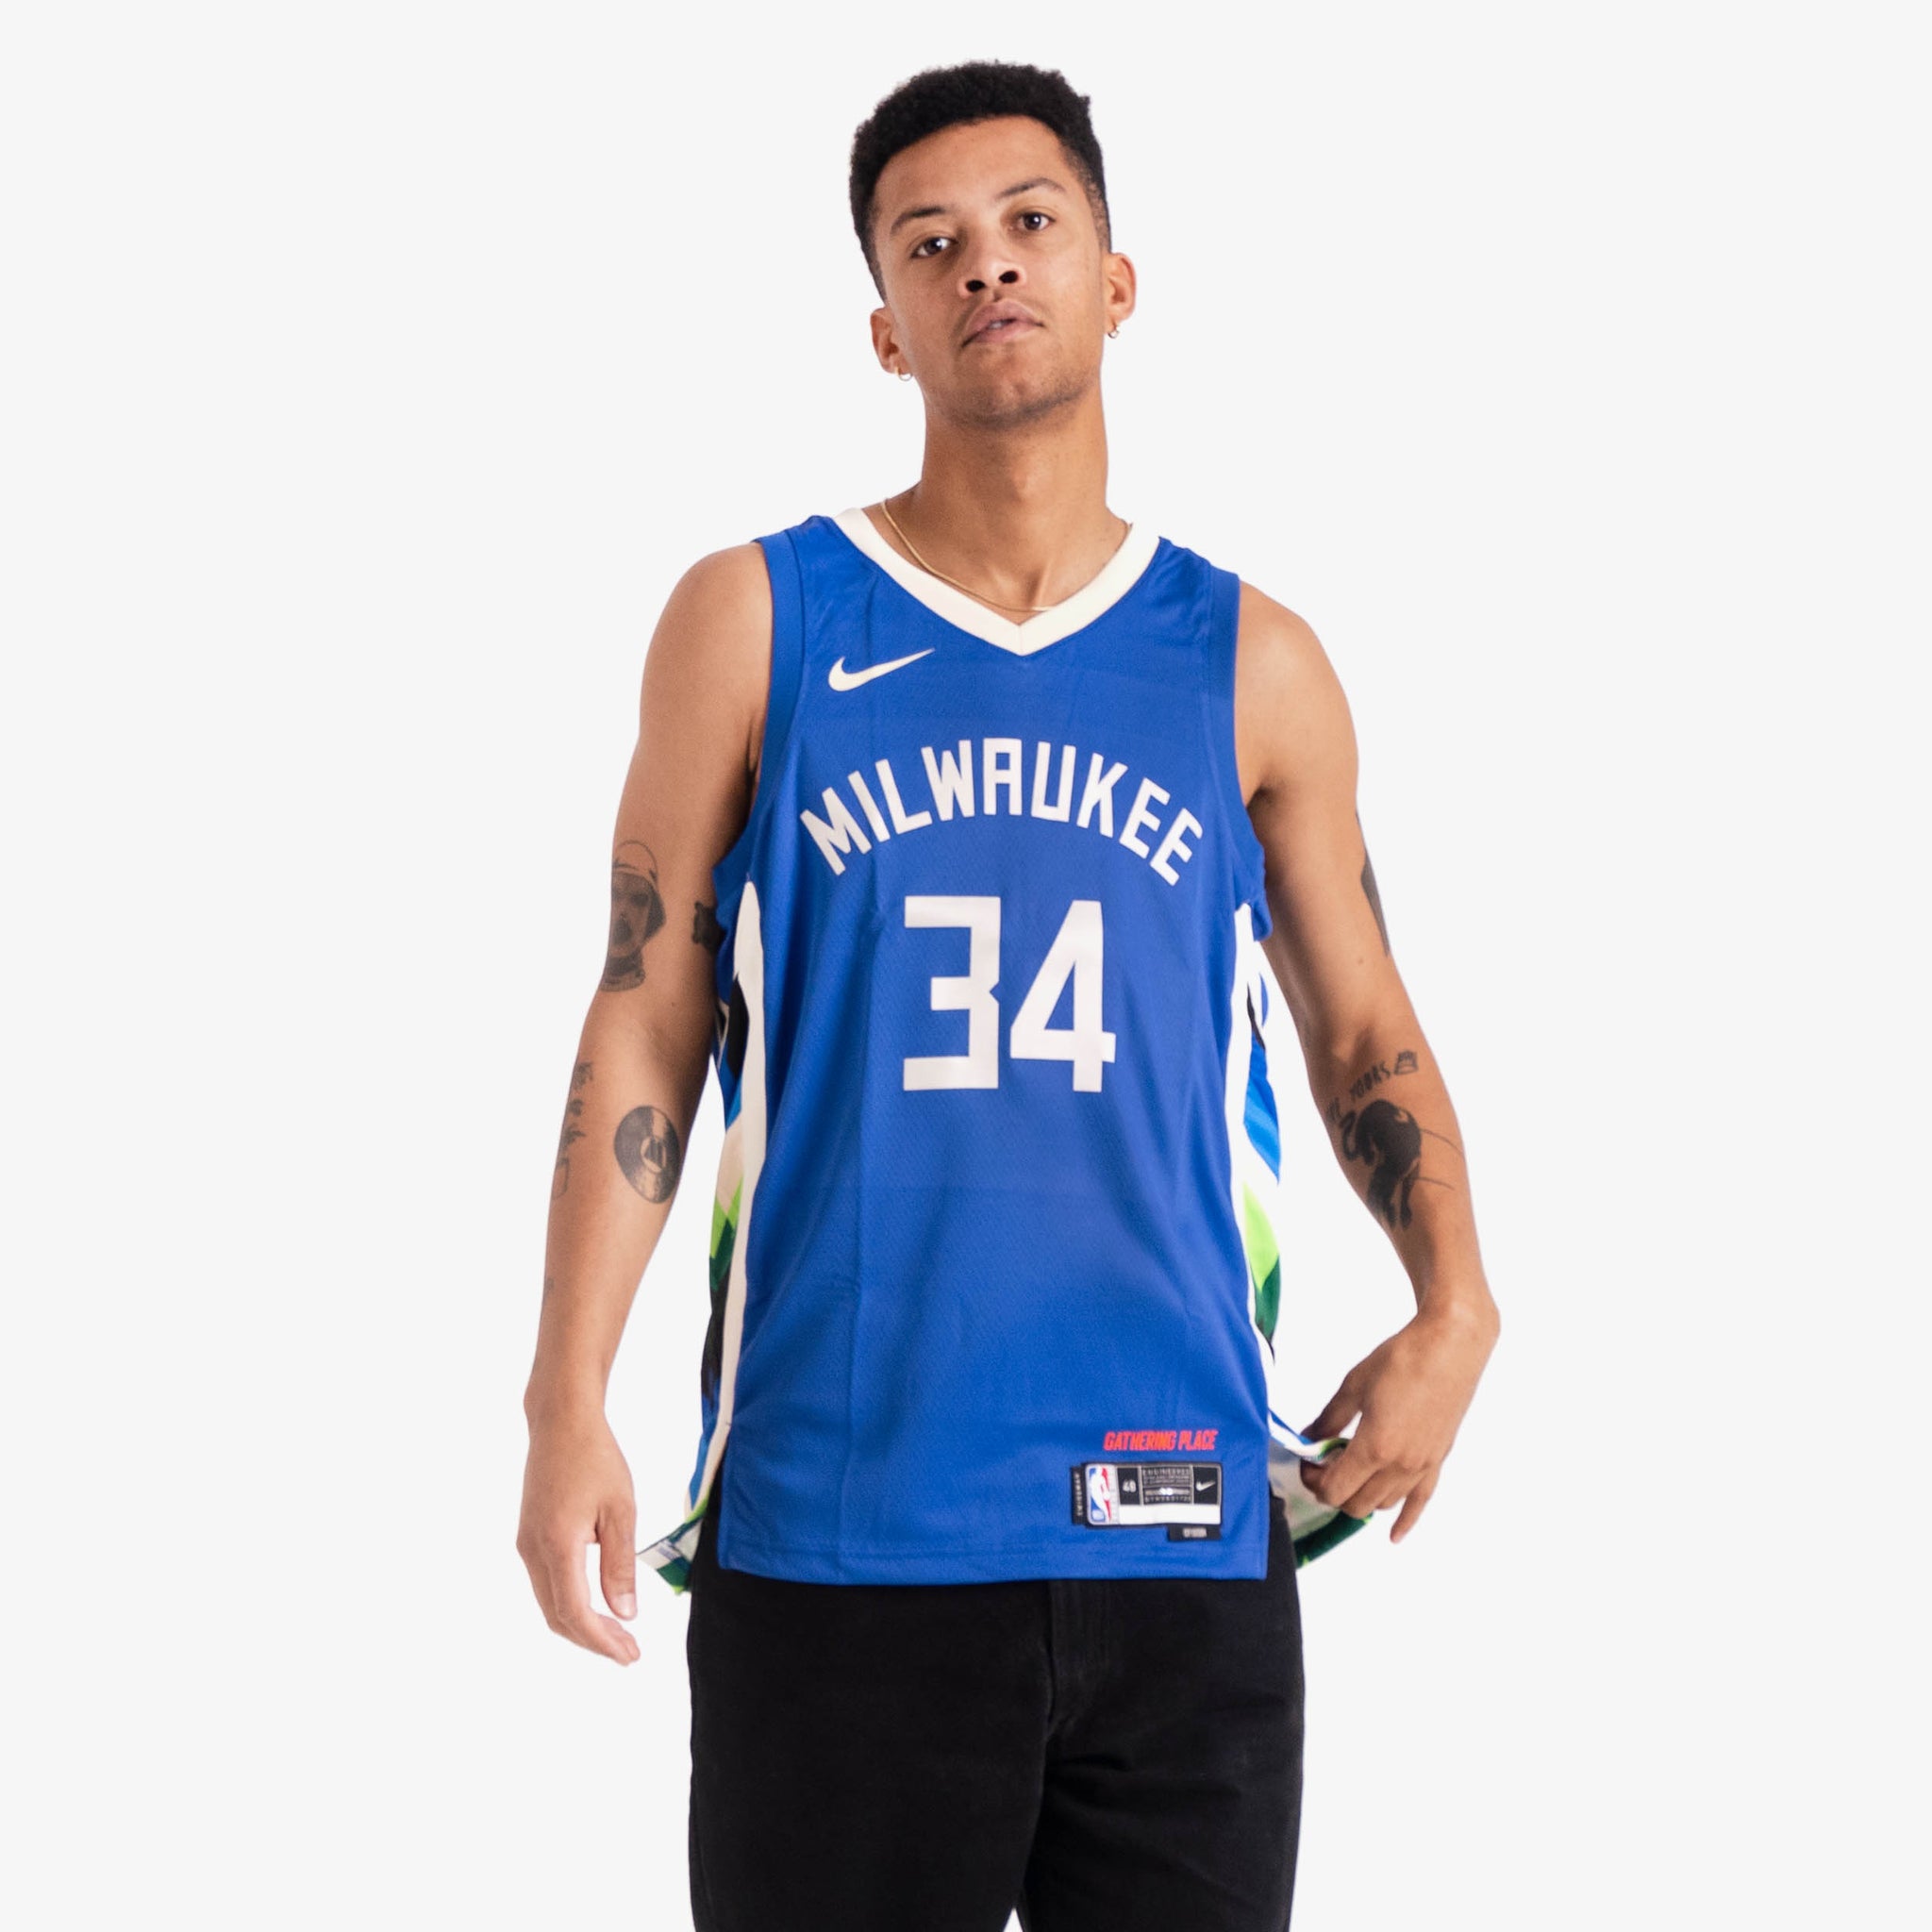 Nike Milwaukee Bucks City Edition gear available now